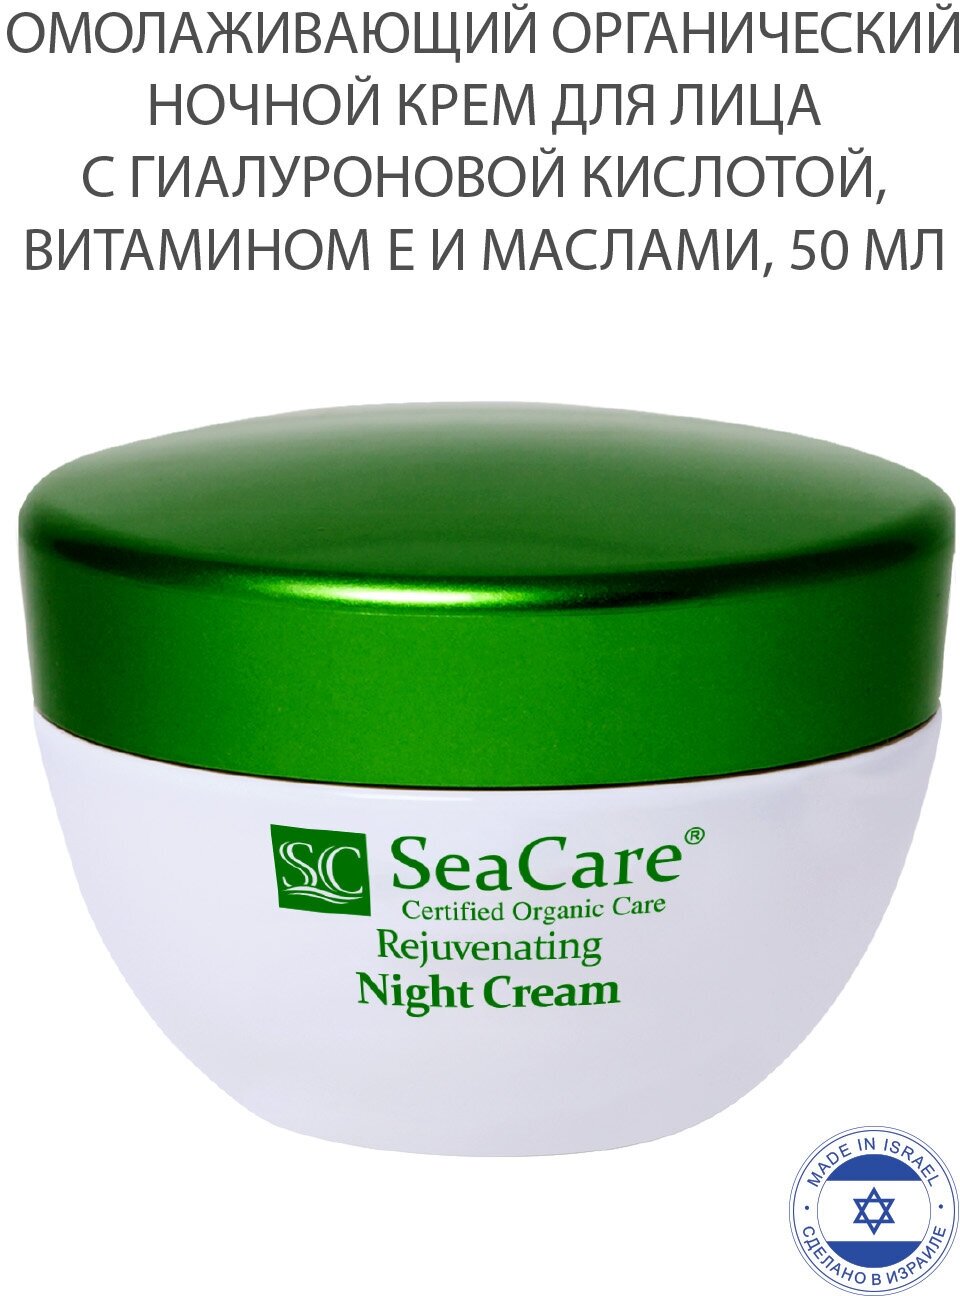 Органический омолаживающий ночной крем для лица с Гиалуроновой кислотой, Витамином Е и Маслами 50мл